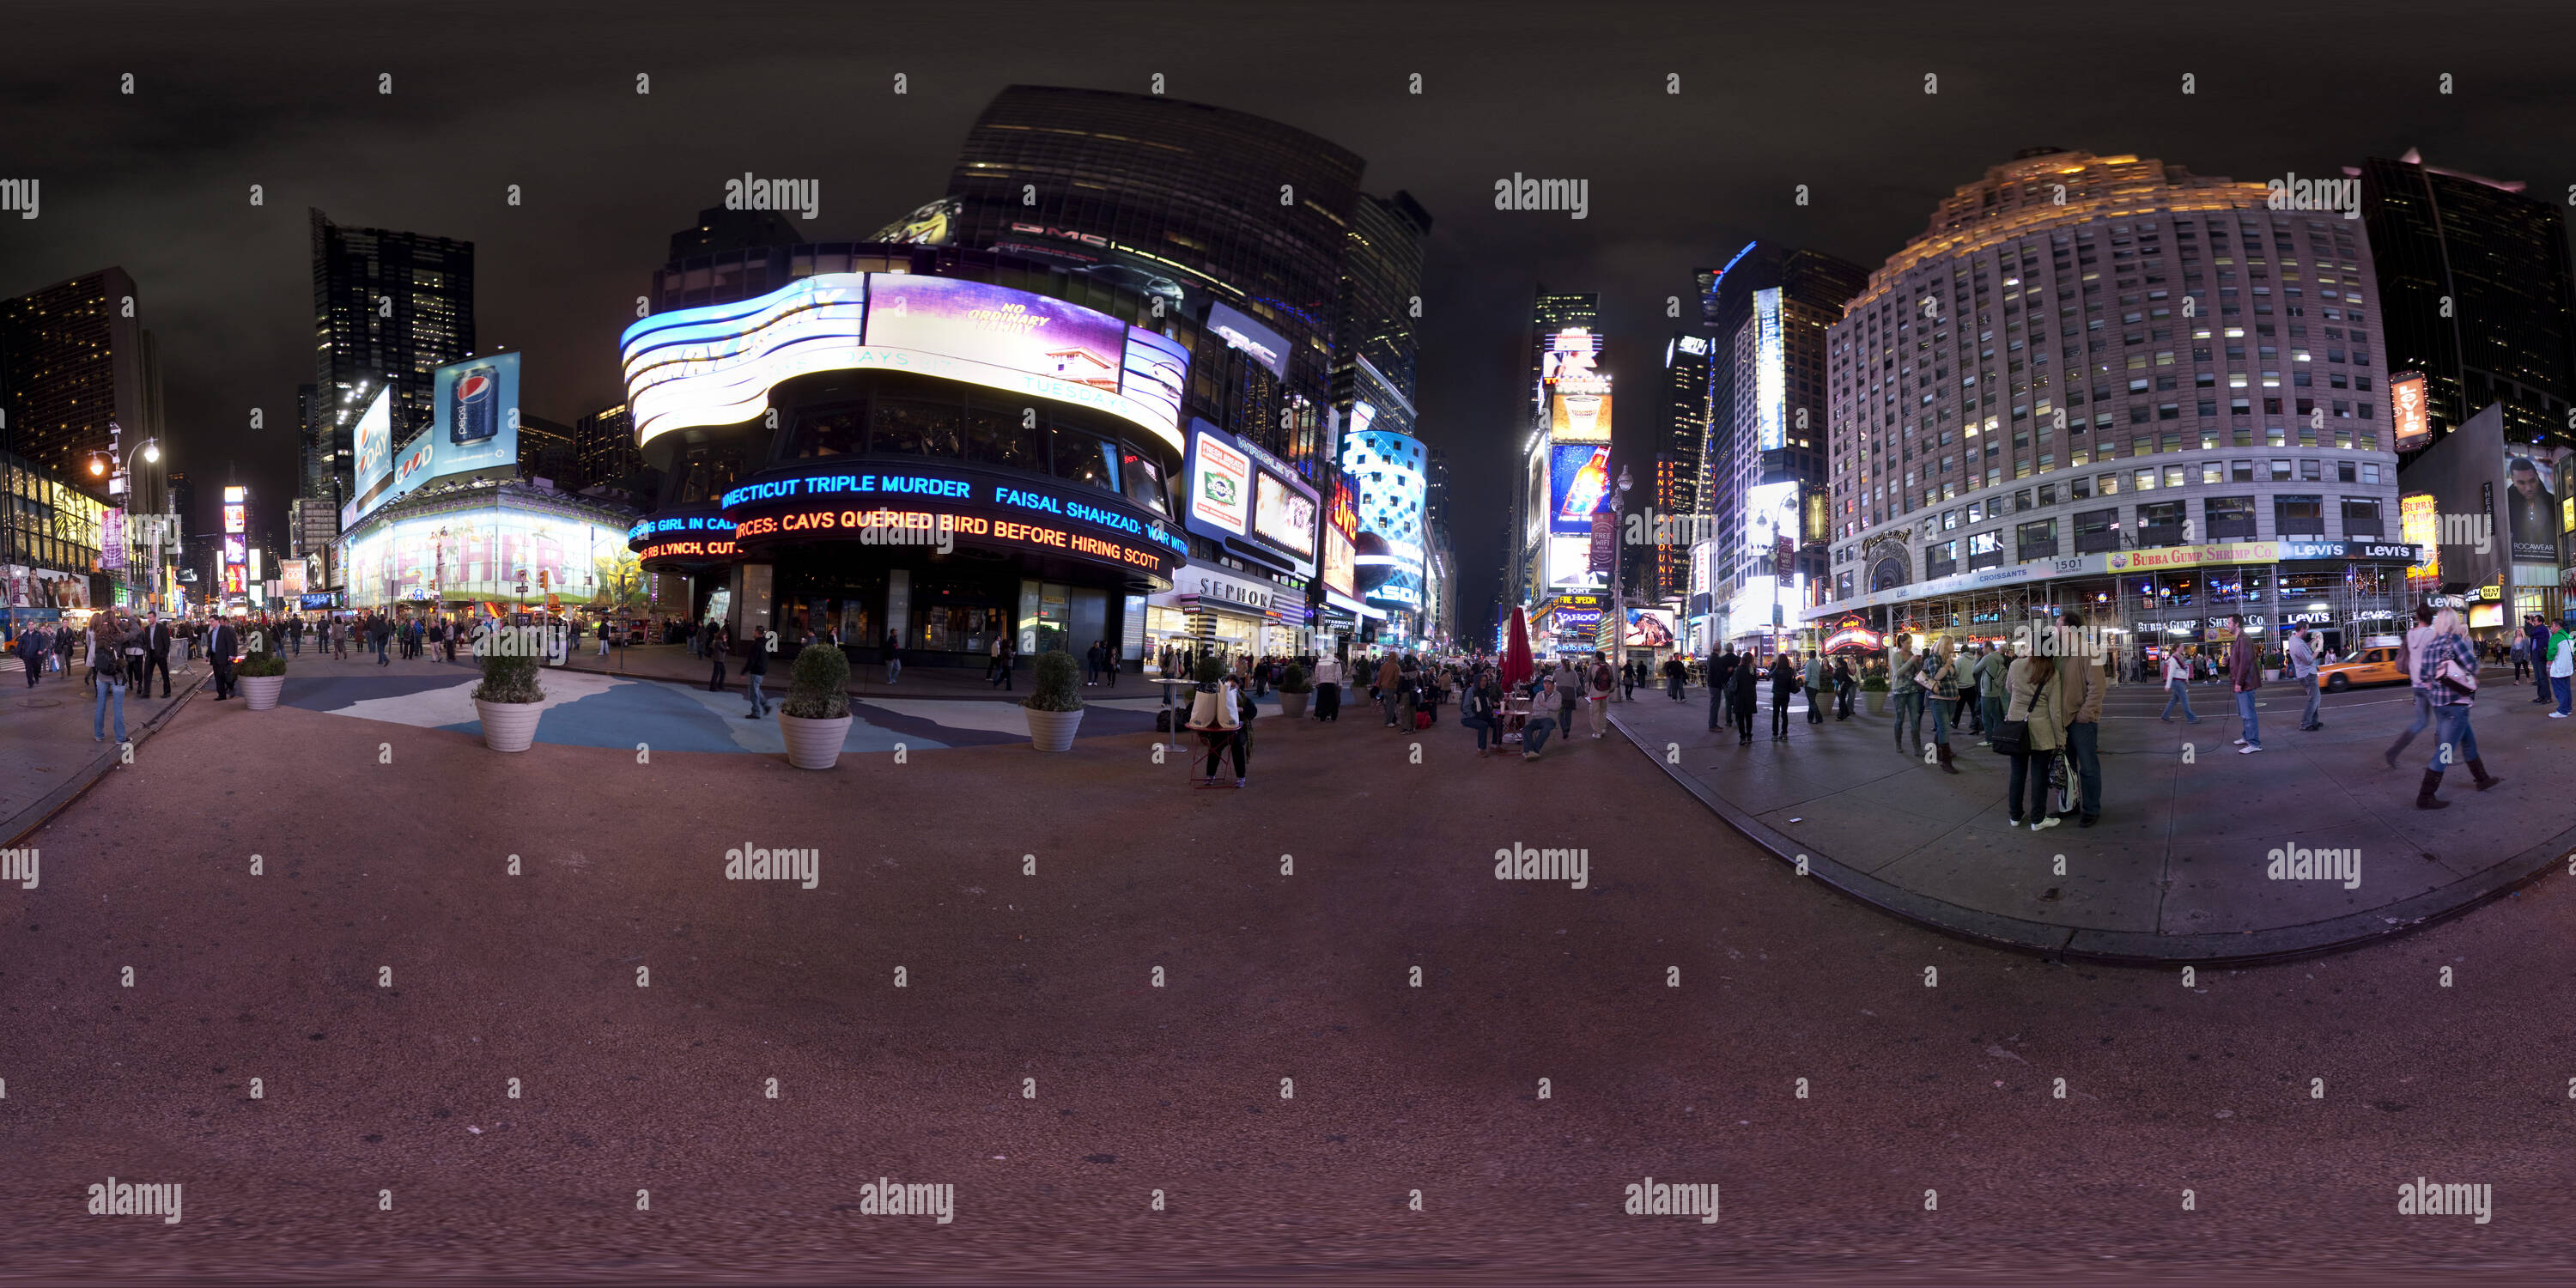 Vue panoramique à 360° de Times Square New York